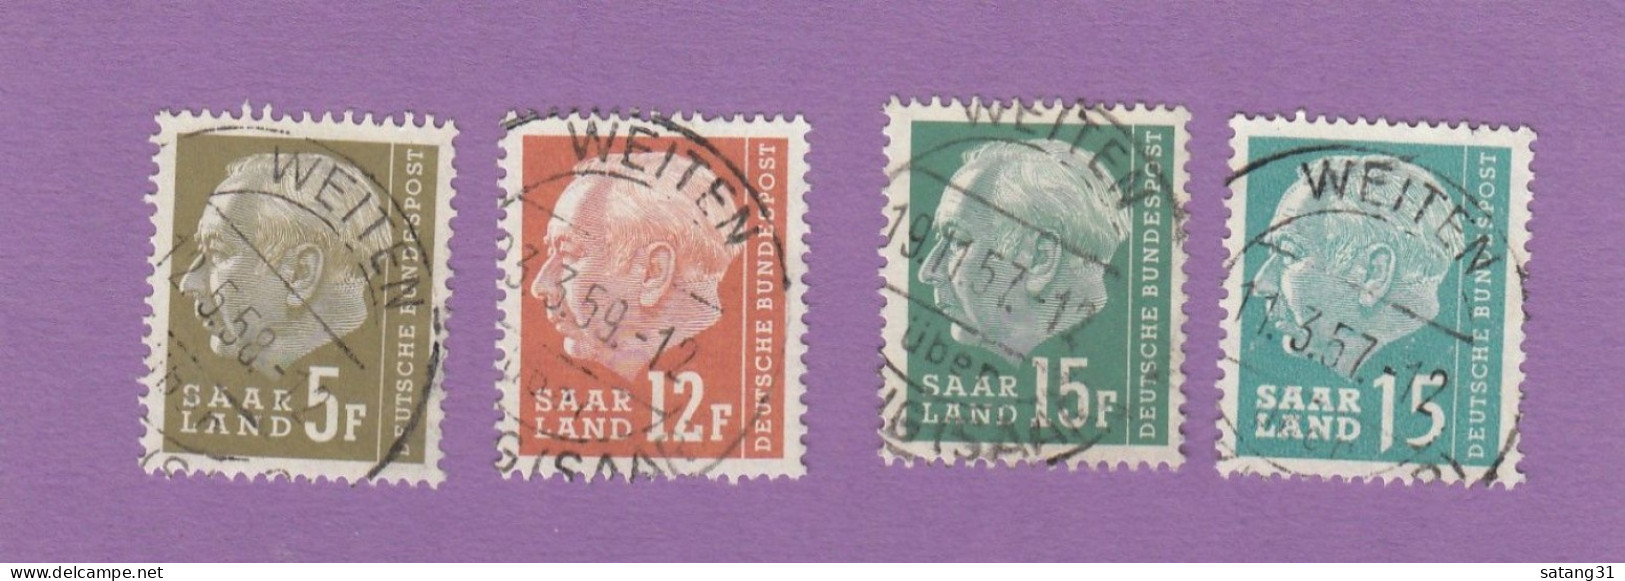 GESTEMPELTE BRIEFMARKEN AUS WEITEN. - Used Stamps